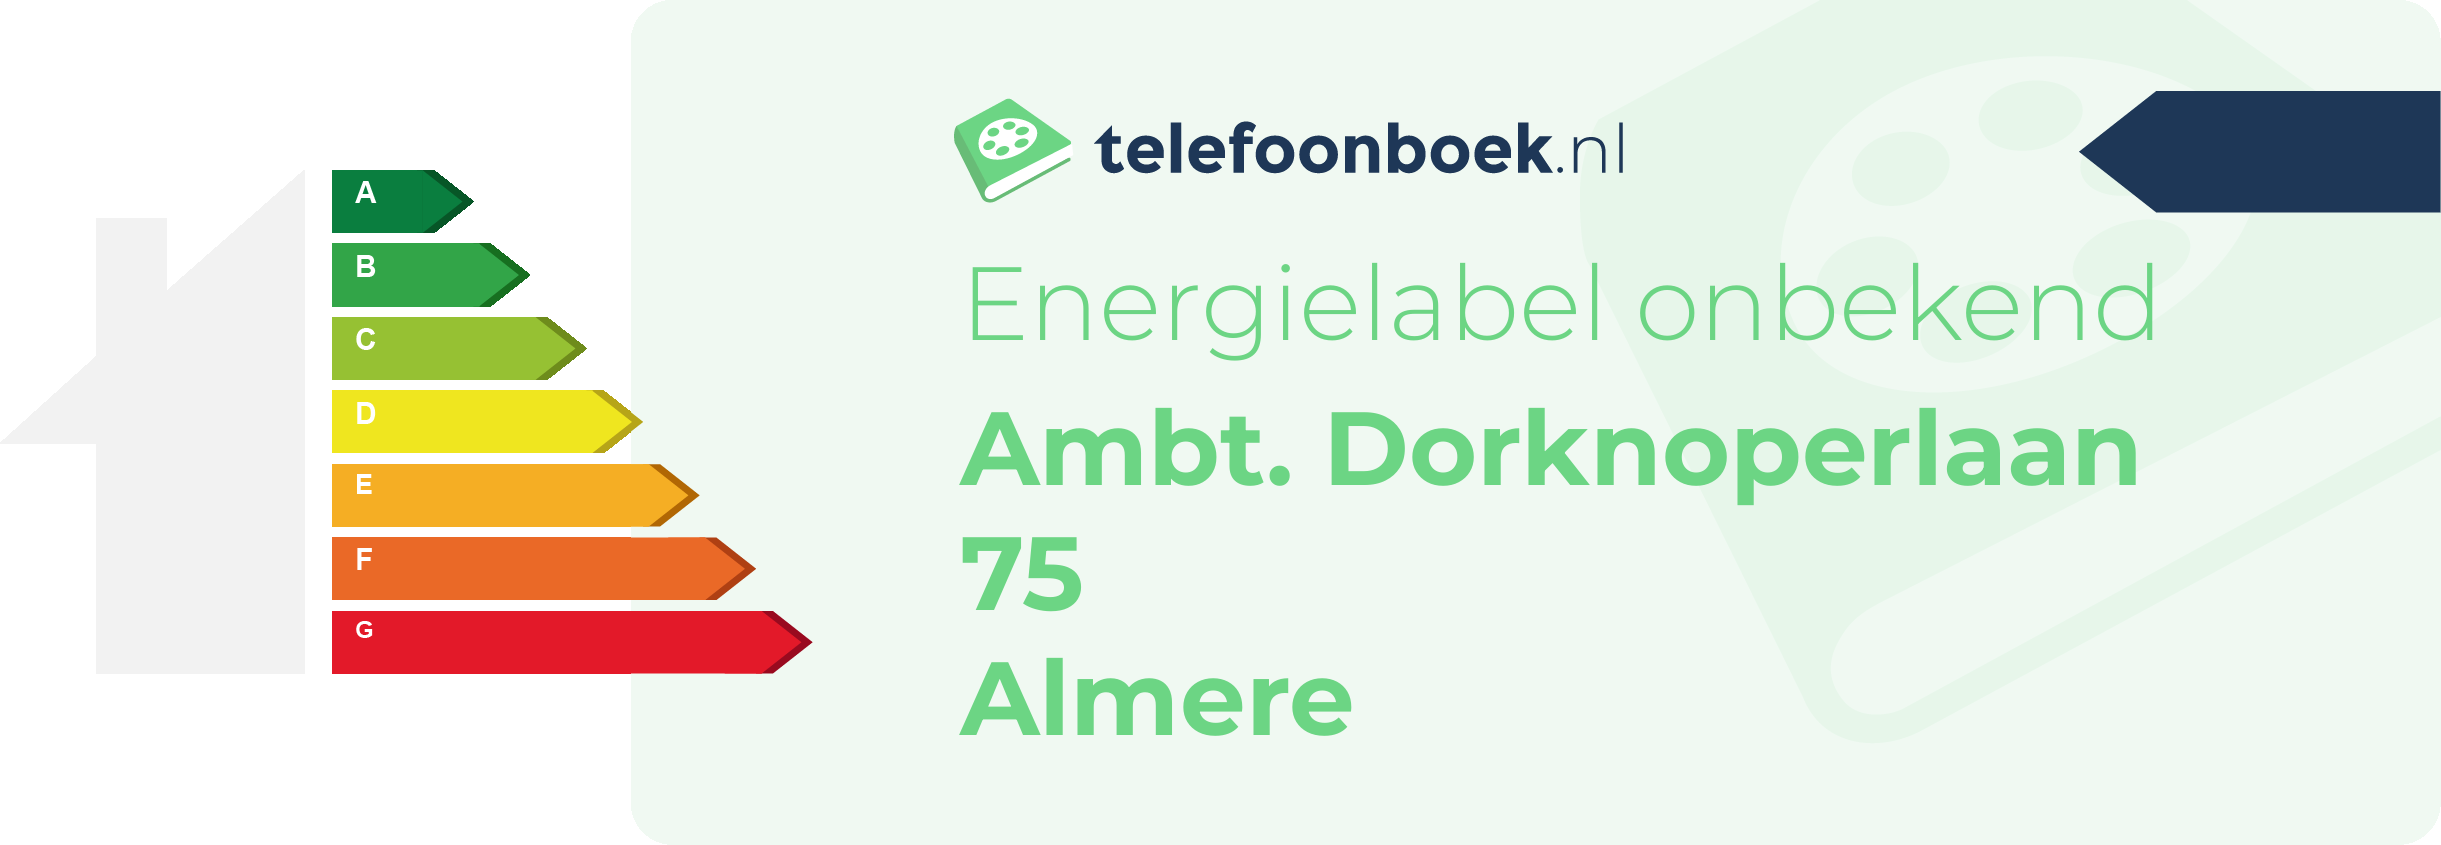 Energielabel Ambt. Dorknoperlaan 75 Almere